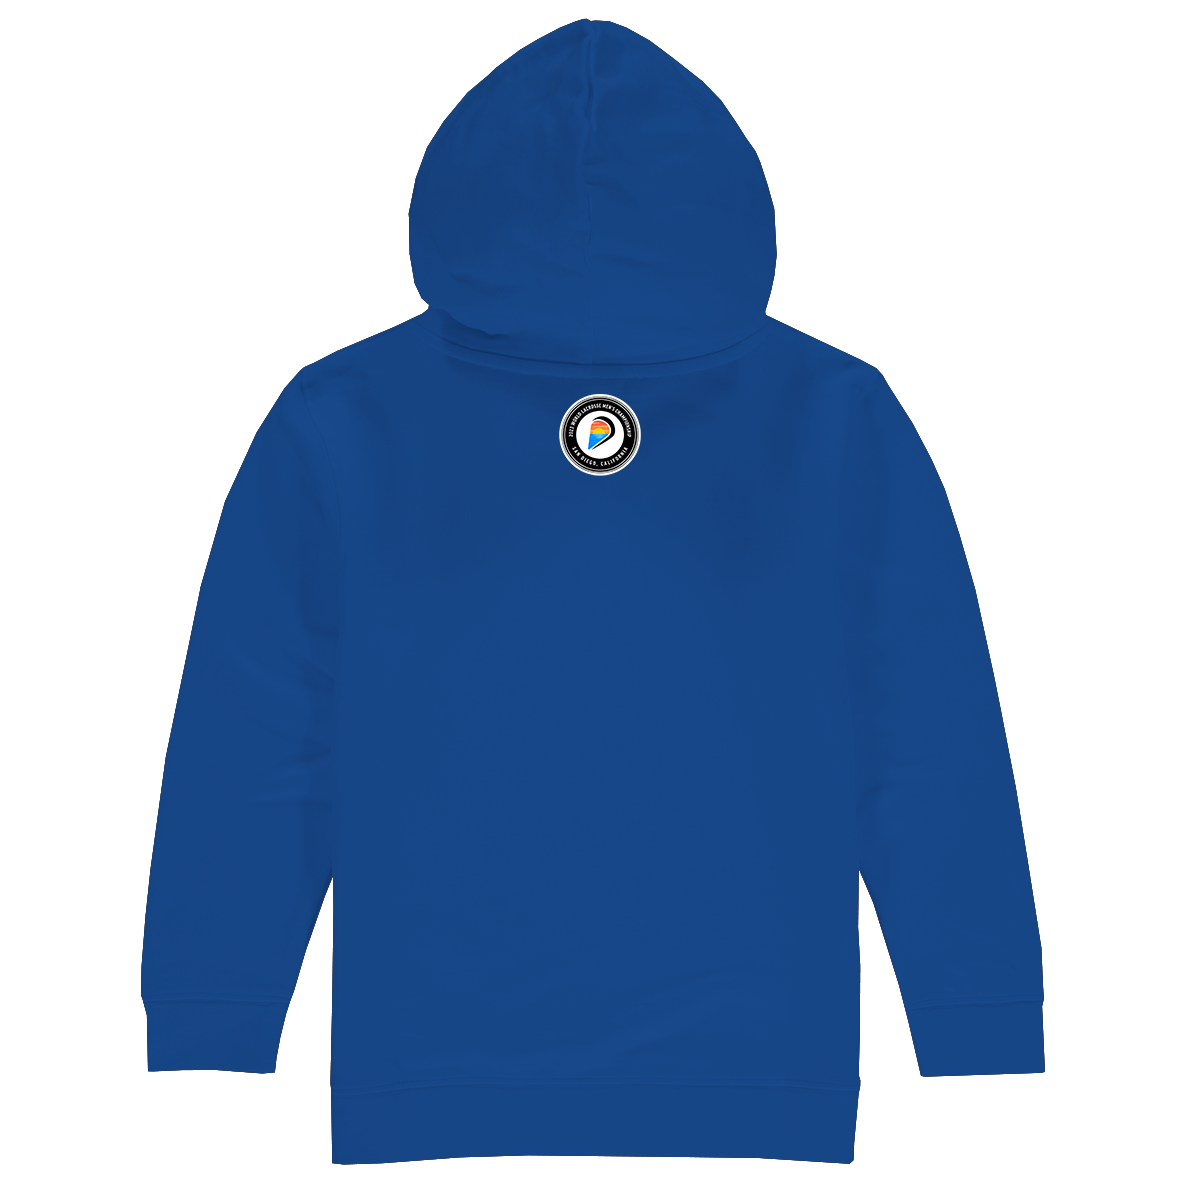 Italy Premium Unisex Hoodie Sweatshirt Royal Blue